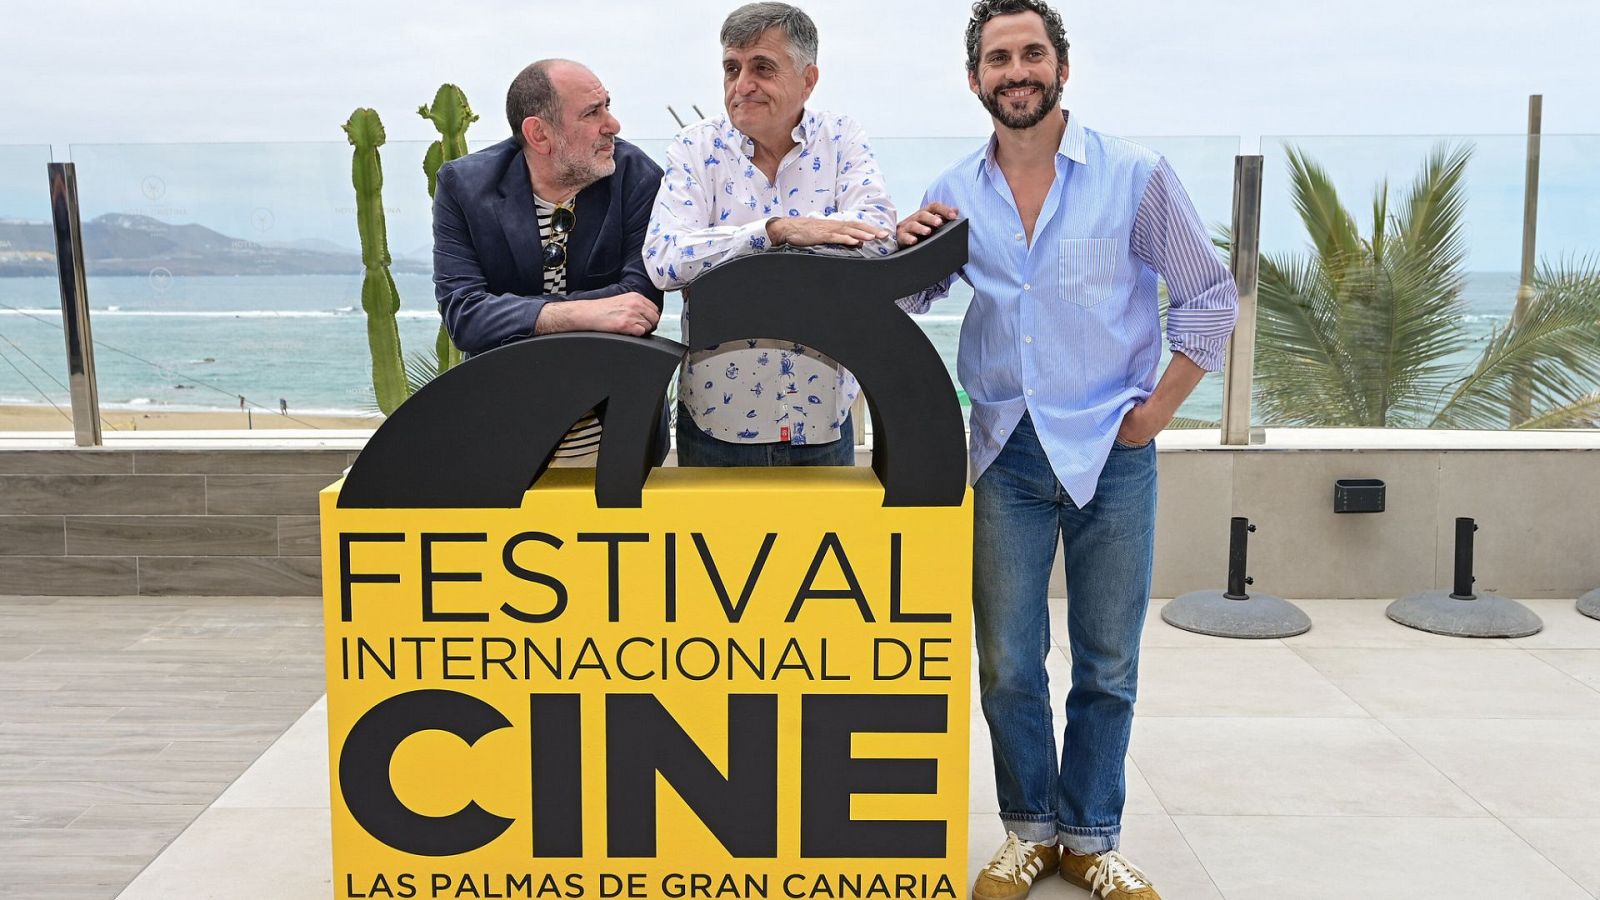 Festival Internacional de Cine de Las Palmas de Gran Canaria 2023: Karra Elejalde y Paco León